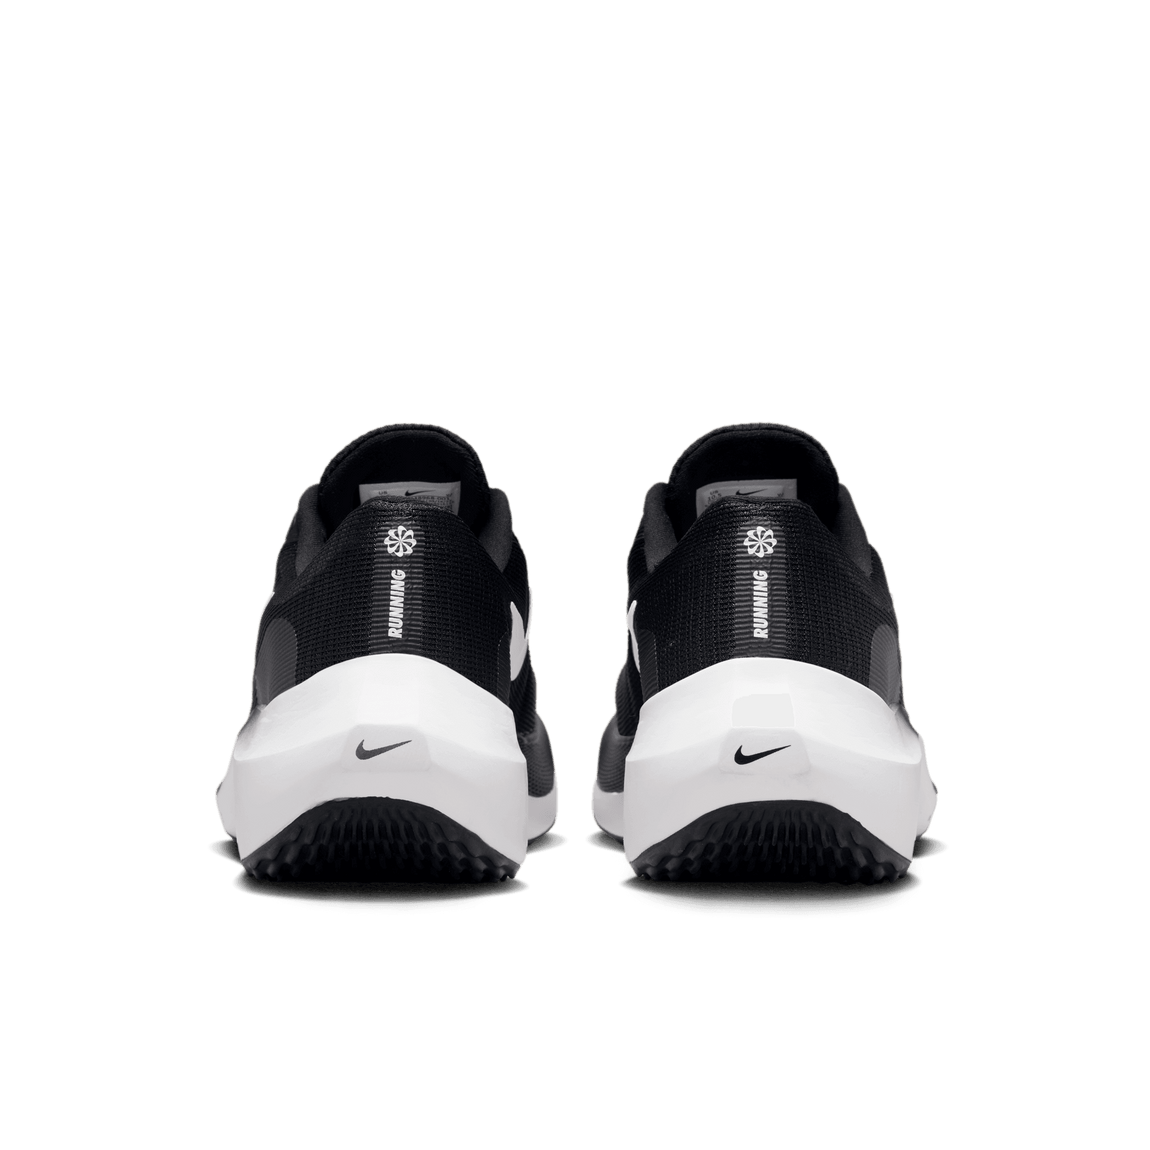 Nike Zoom Fly 5 (Black/White) - Nike Zoom Fly 5 (Black/White) - 